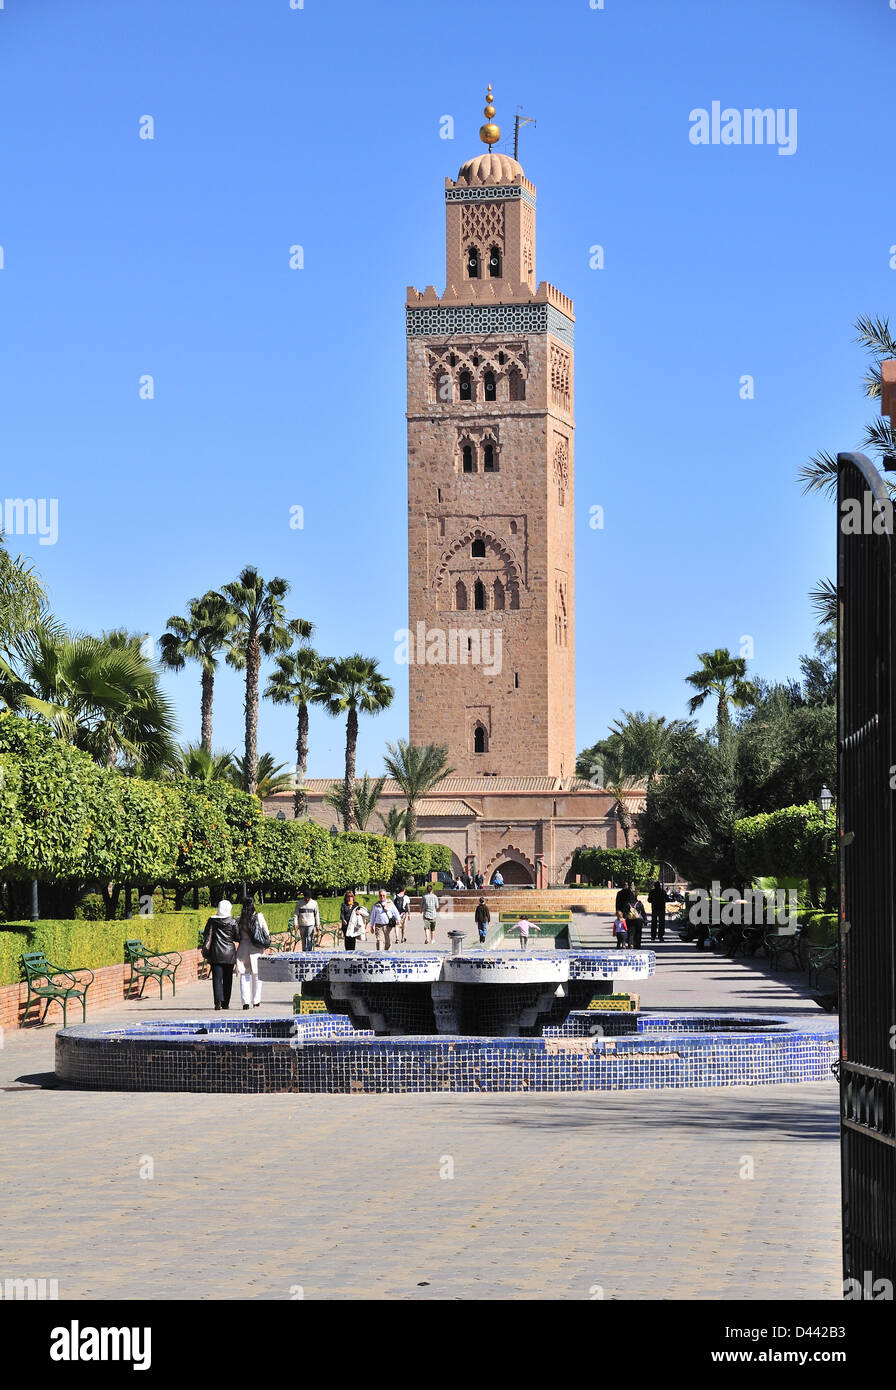 Minarett der Koutoubia-Moschee mit Menschen zu Fuß durch die Koutoubia Gärten, Marrakesch (Marrakech) Marokko Stockfoto